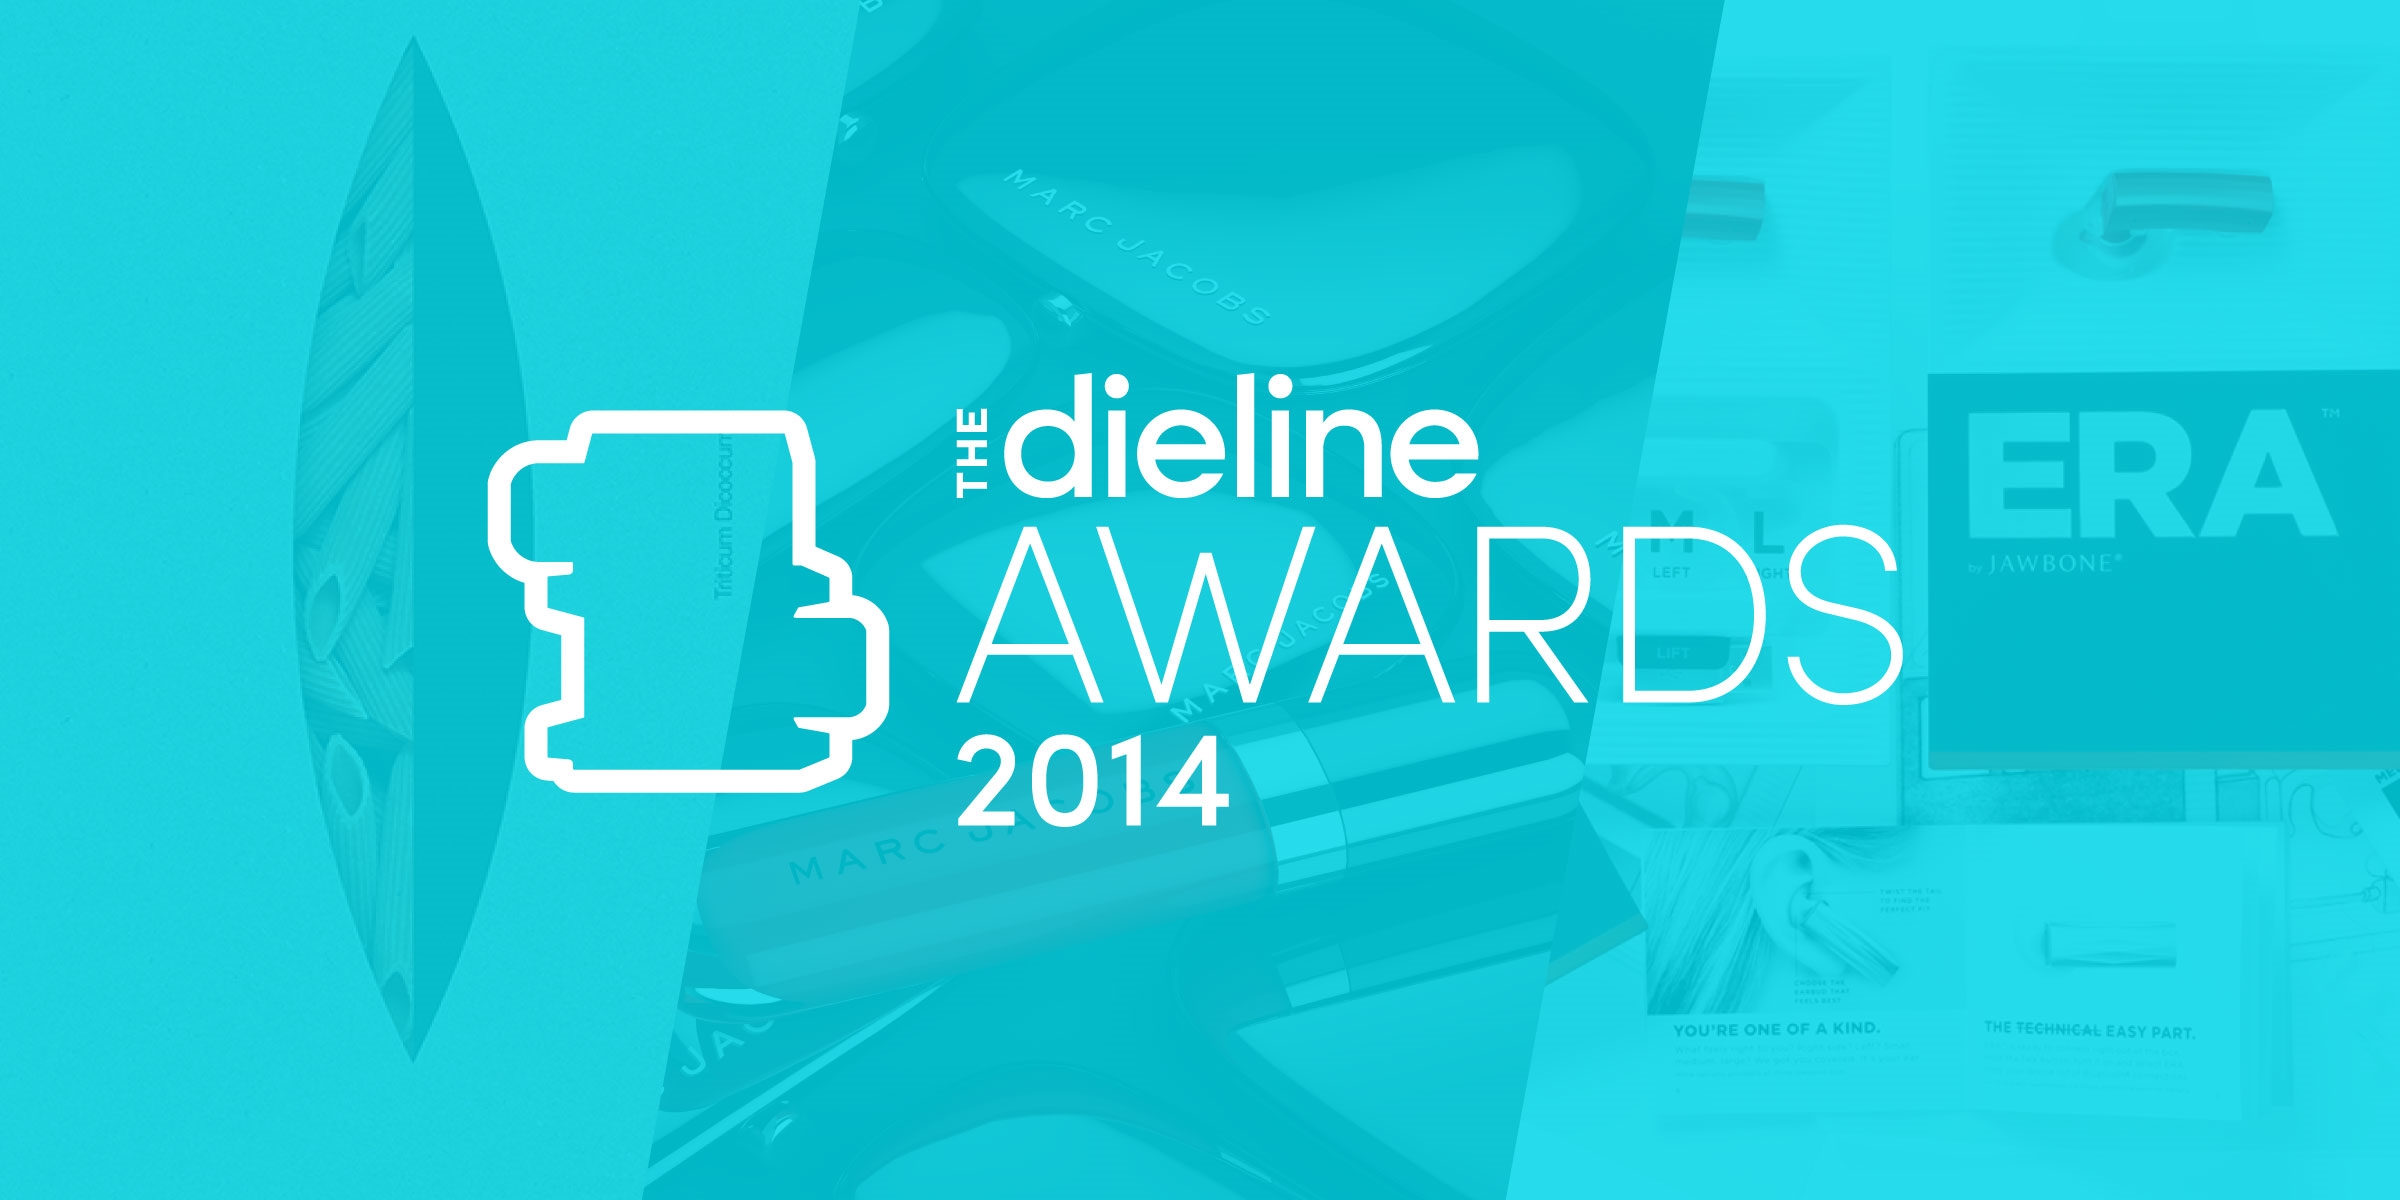 The Dieline Awards 2014 Winners